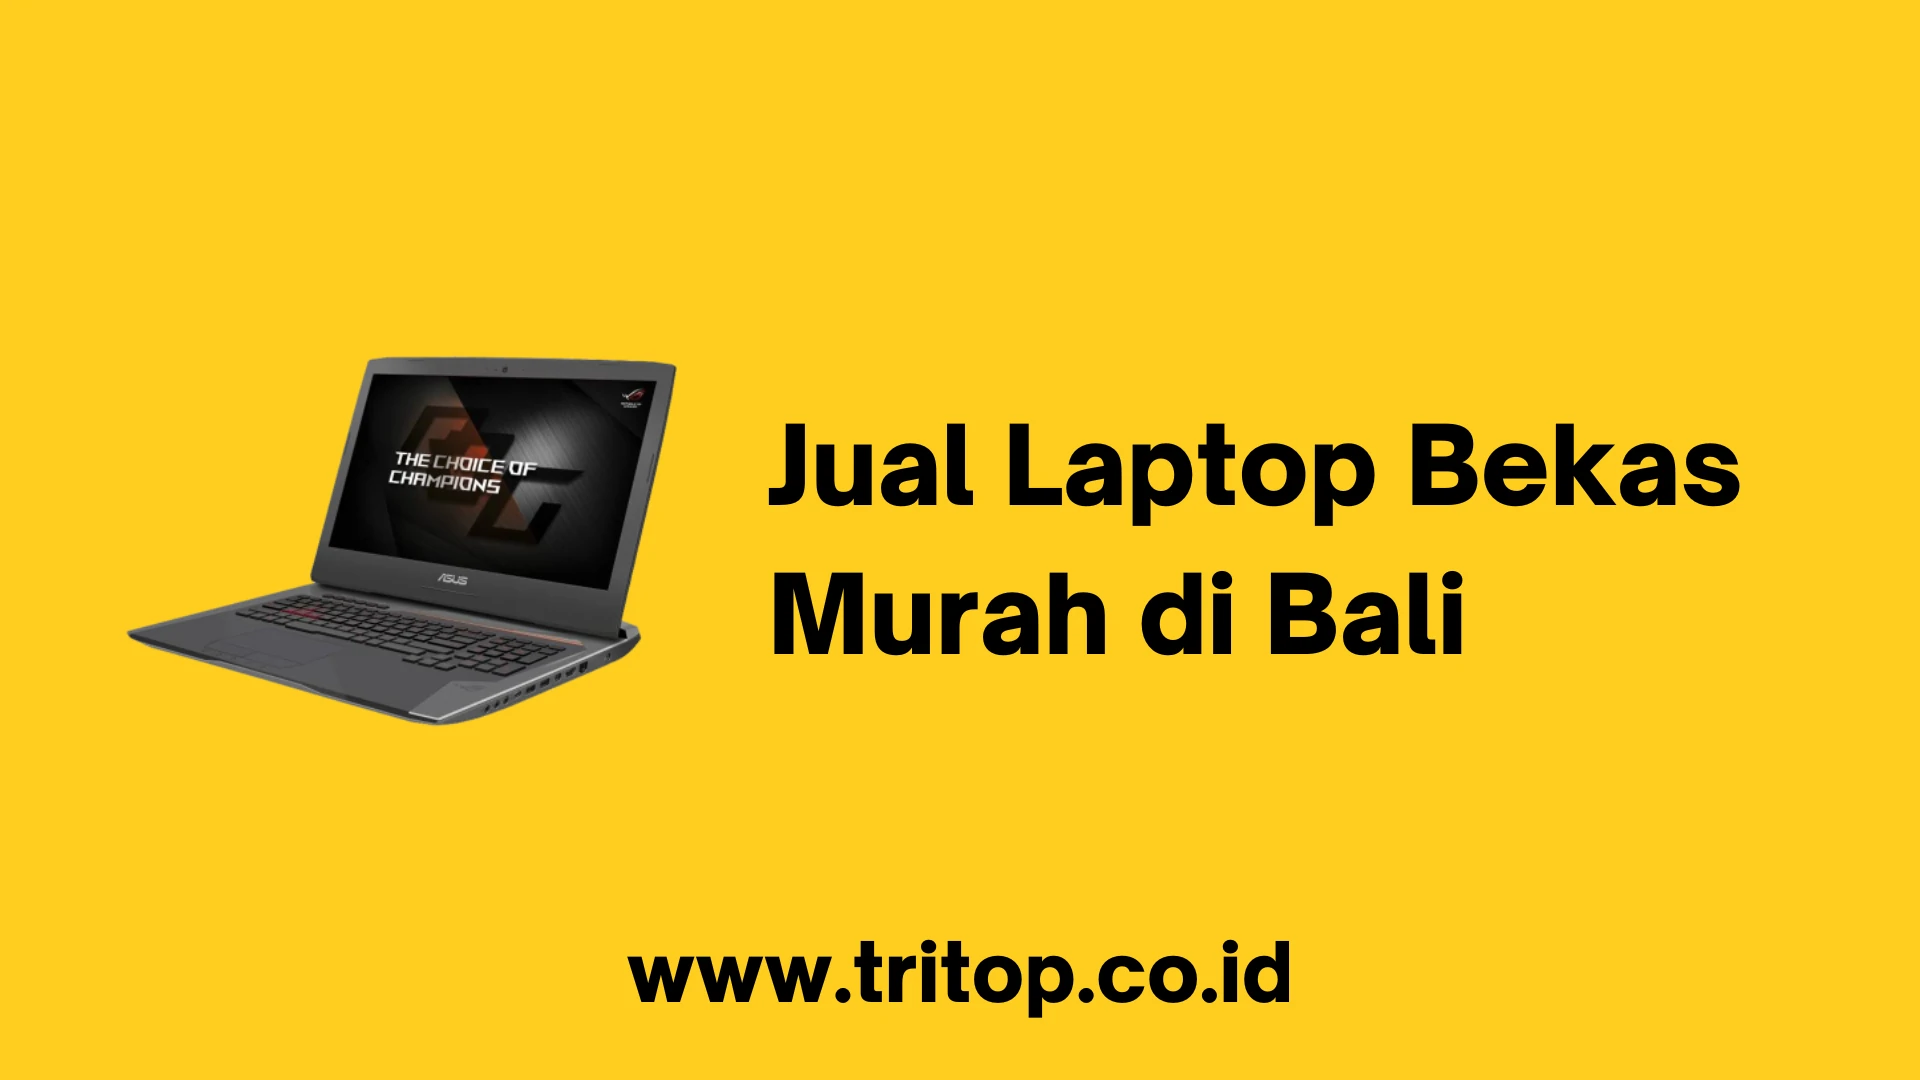 Jual Laptop Bekas Murah Bali www.tritop.co.id